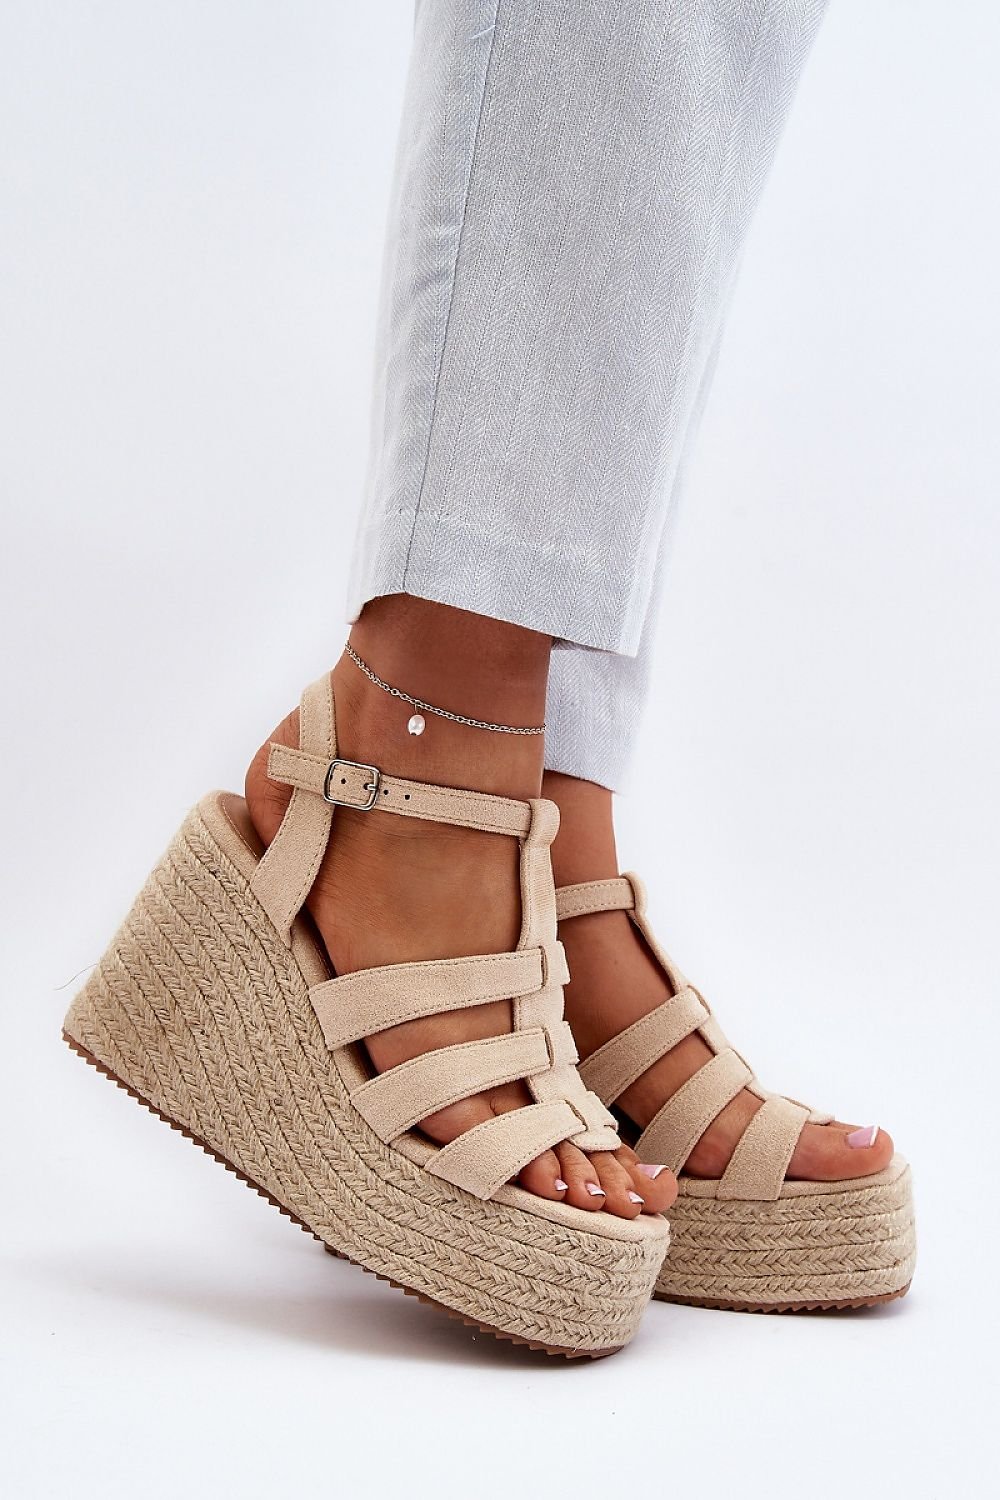 Step in Style Buskin: Elegant Platform Sandals for Ultimate Comfort